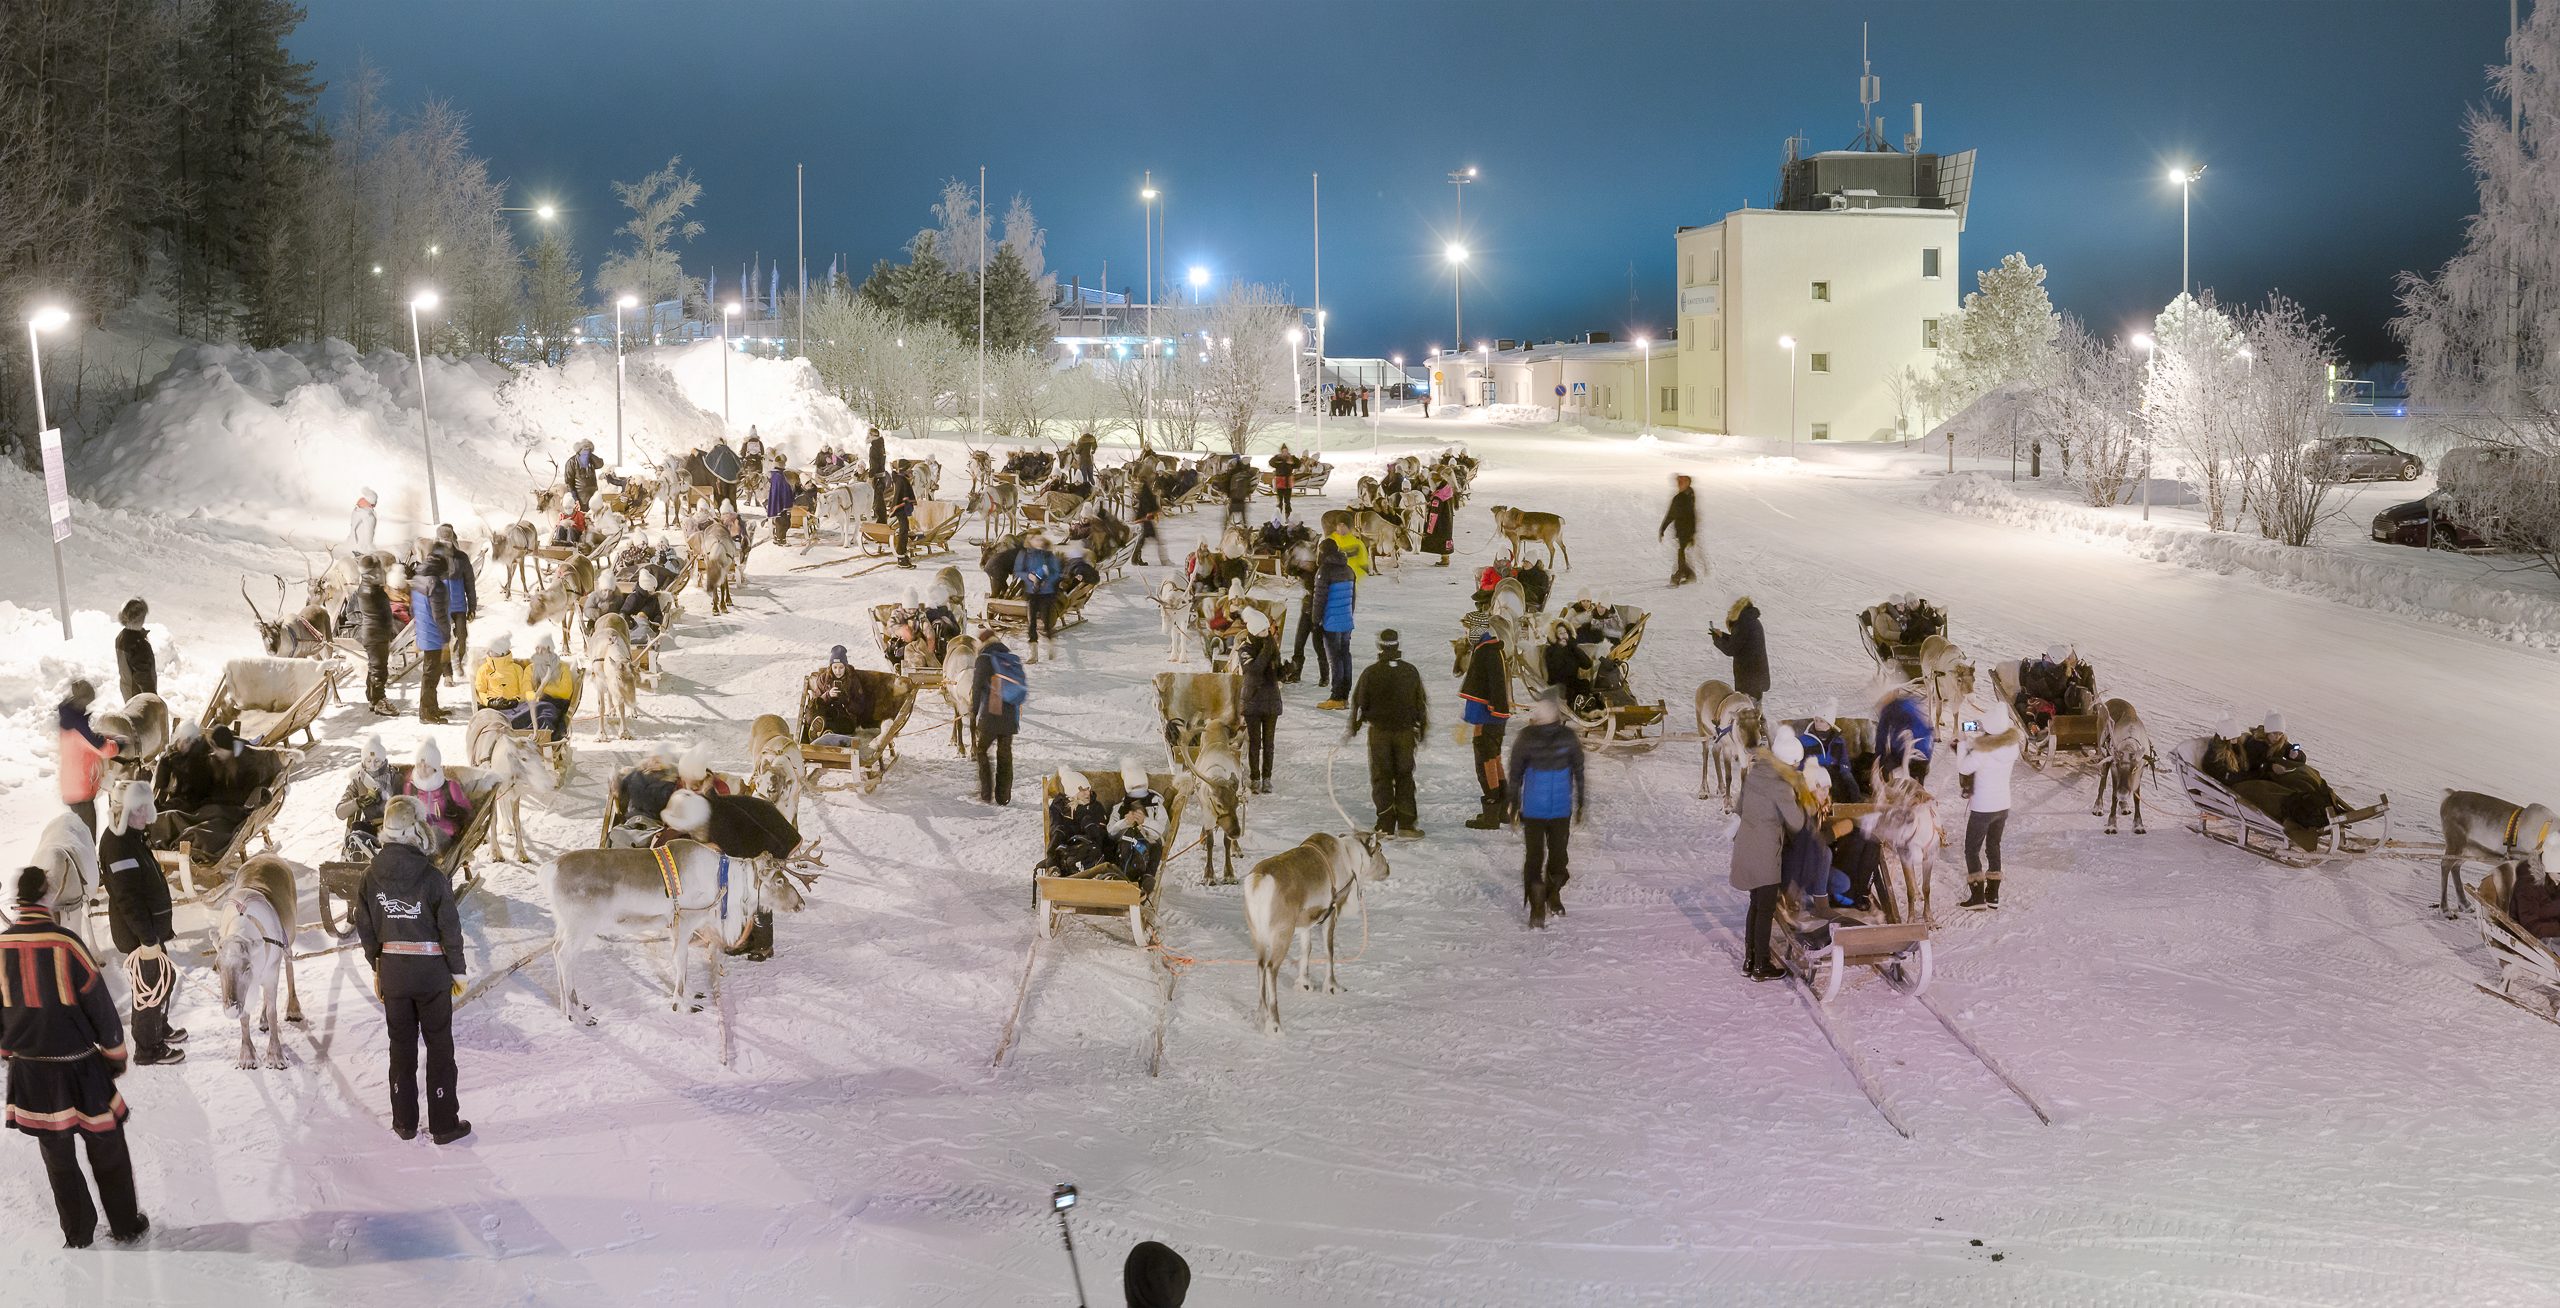 Reindeer taxi at the Rovaniemi airport, Wild Nordic Finland @wildnordicfinland.